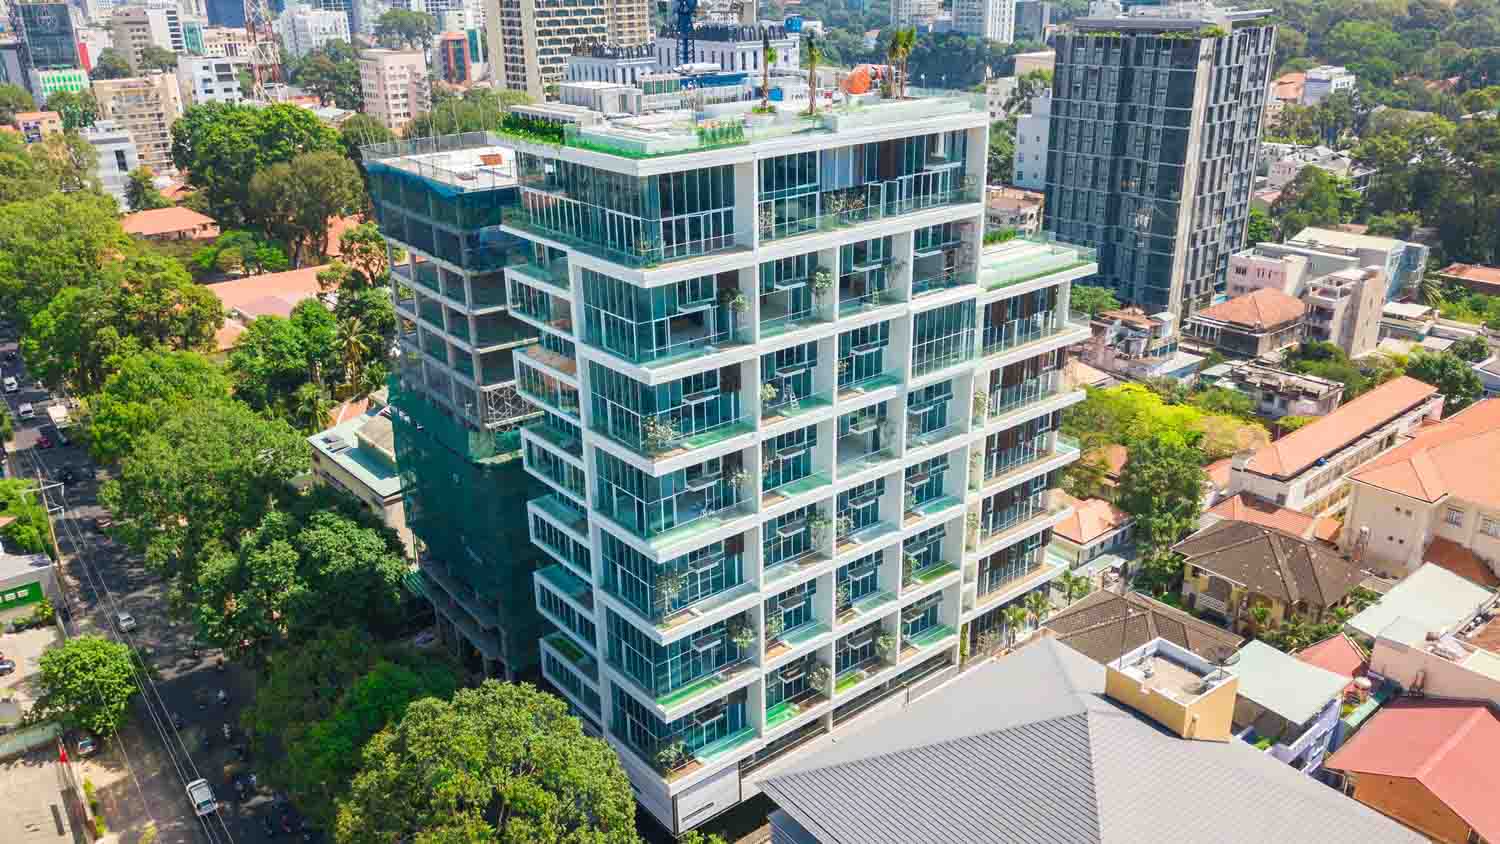 Penthouse, Duplex và Sky villa chỉ dành cho giới siêu giàu: Muốn chốt đơn xác định phải có chục tỷ, nghía view nhà mỹ nhân Việt này đủ biết độ xa hoa - Ảnh 5.